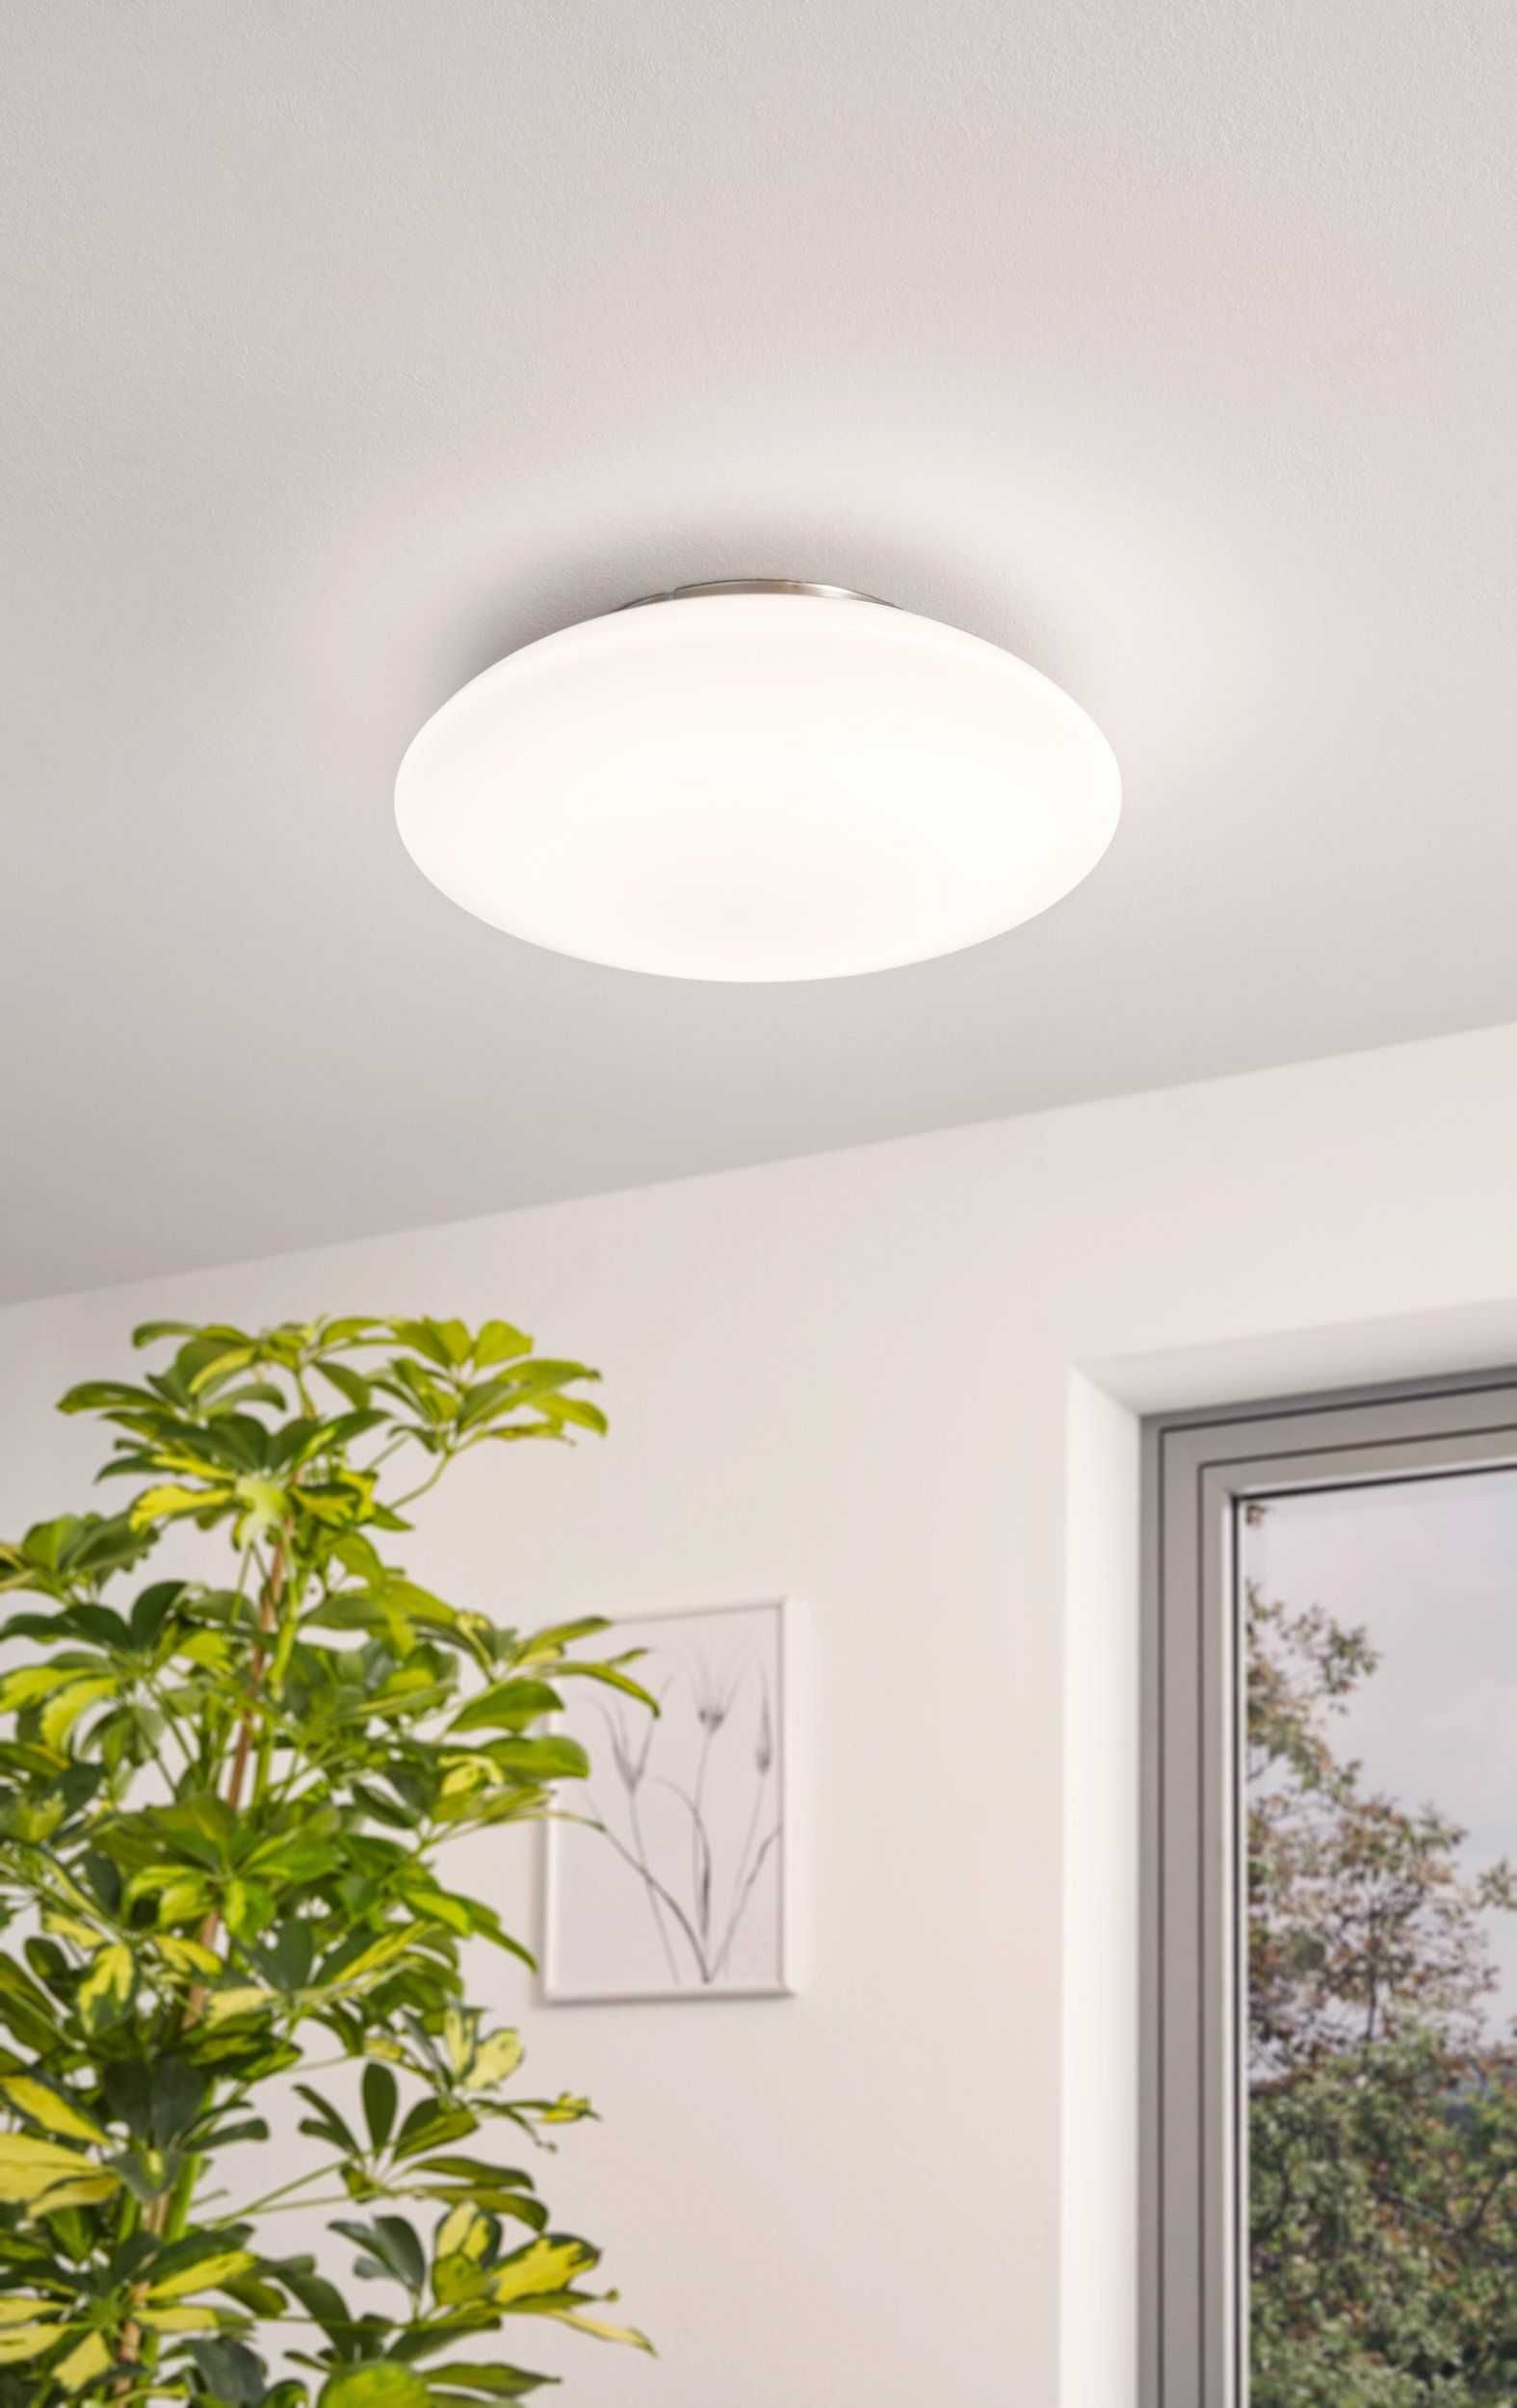 Nowa lampa sufitowa plafon LED funkcja smart do sterowania